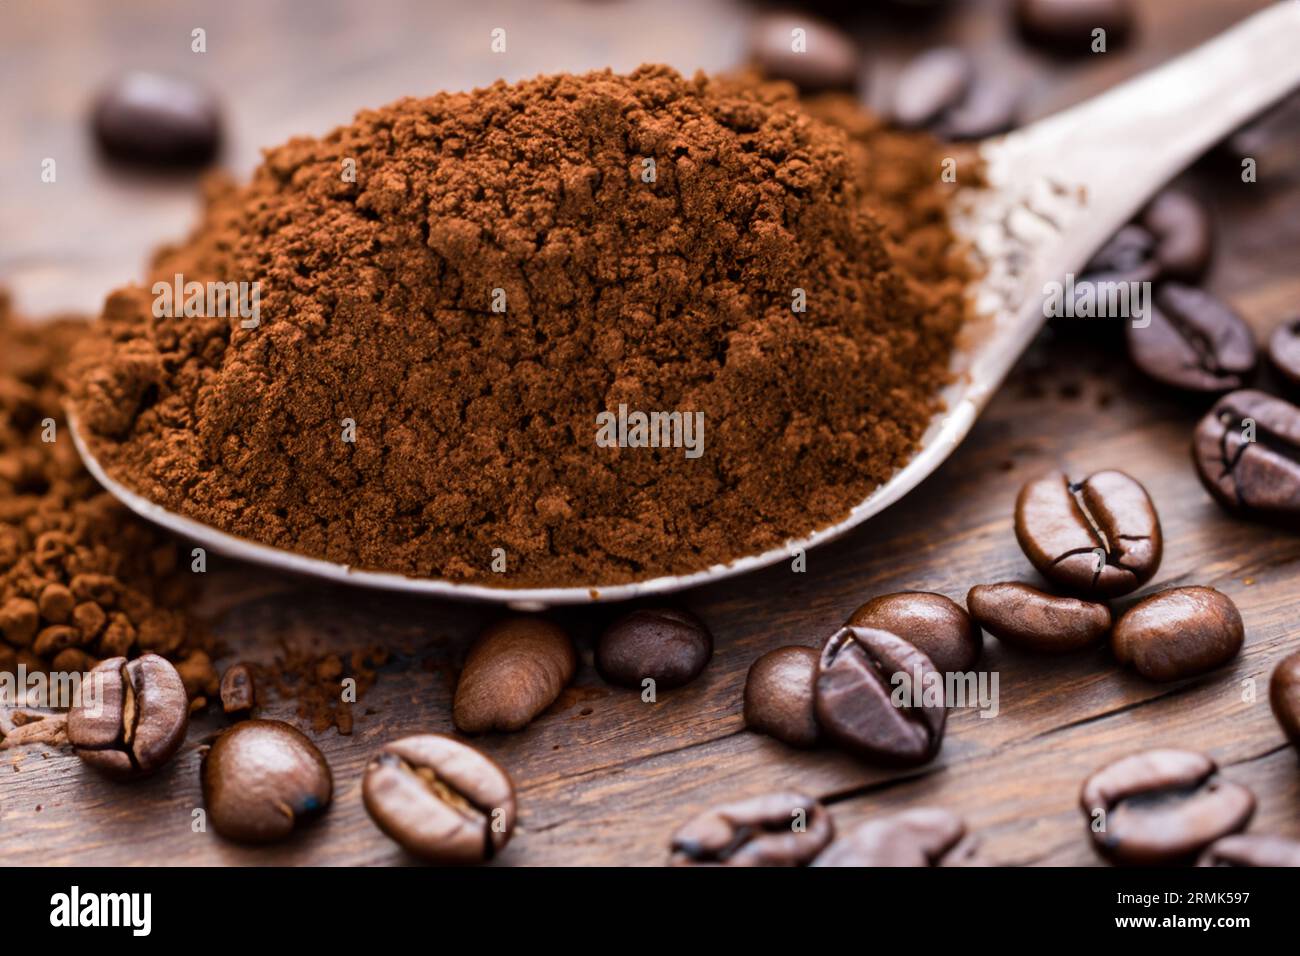 cuillère avec de la poudre et des grains de café sur une vieille cuillère en bois Banque D'Images